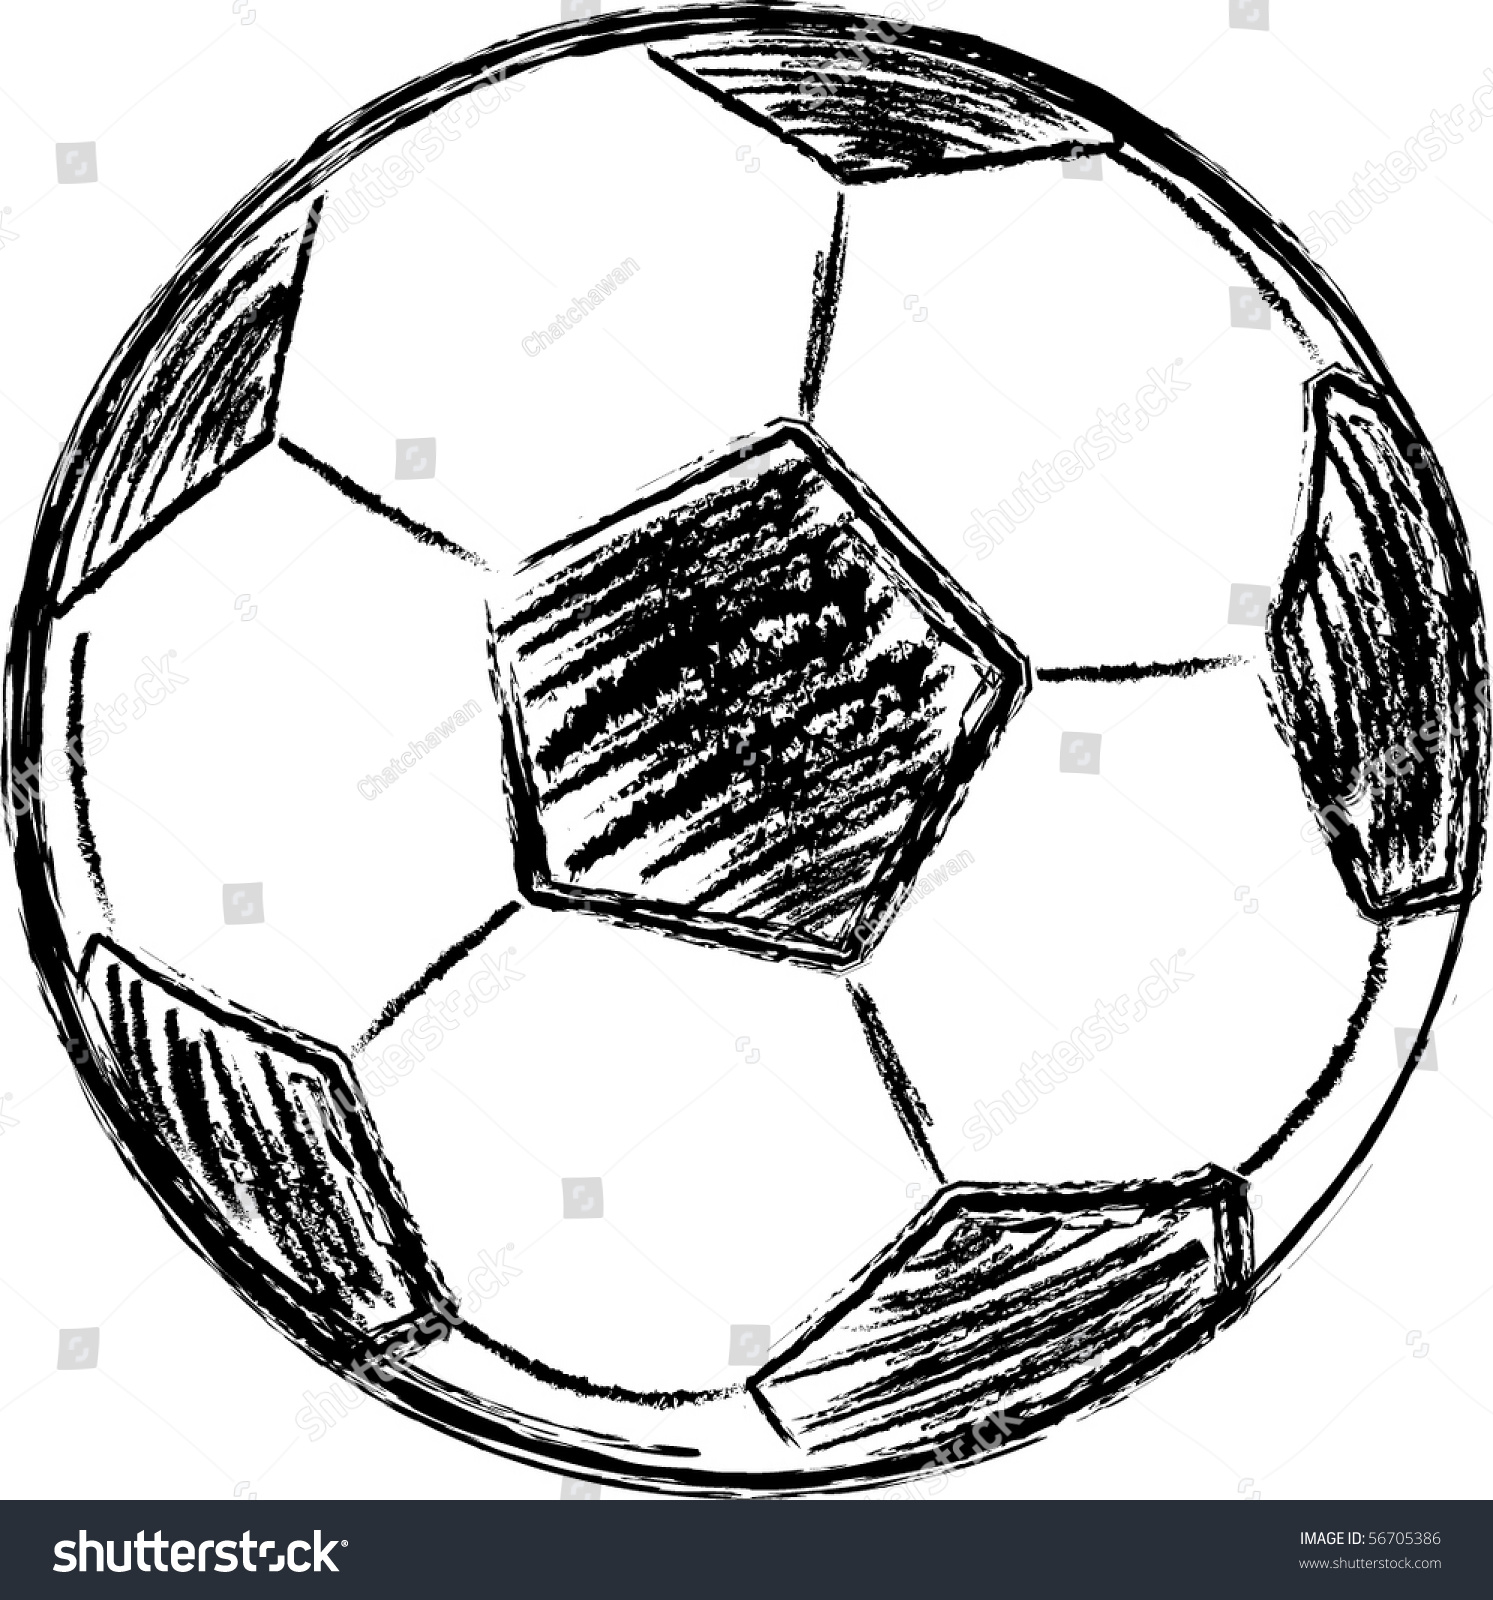 Футбольный мяч скетч